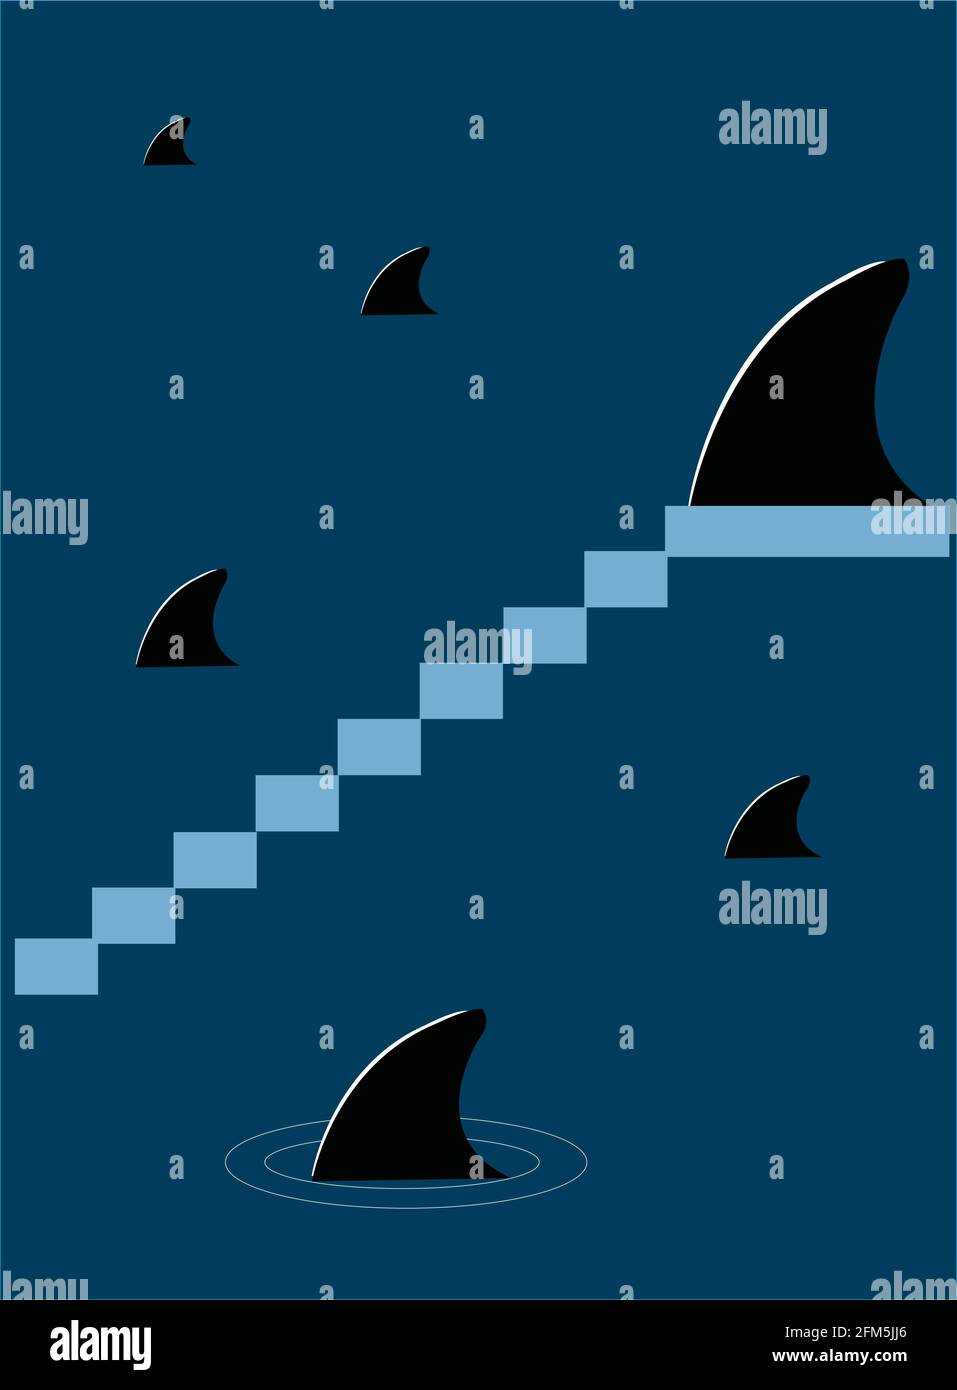 Illustrazione dell'idea dello spettacolo Truman con gli squali che escono dell'acqua per bollire il pericolo in una falsa illusoria mondo Illustrazione Vettoriale